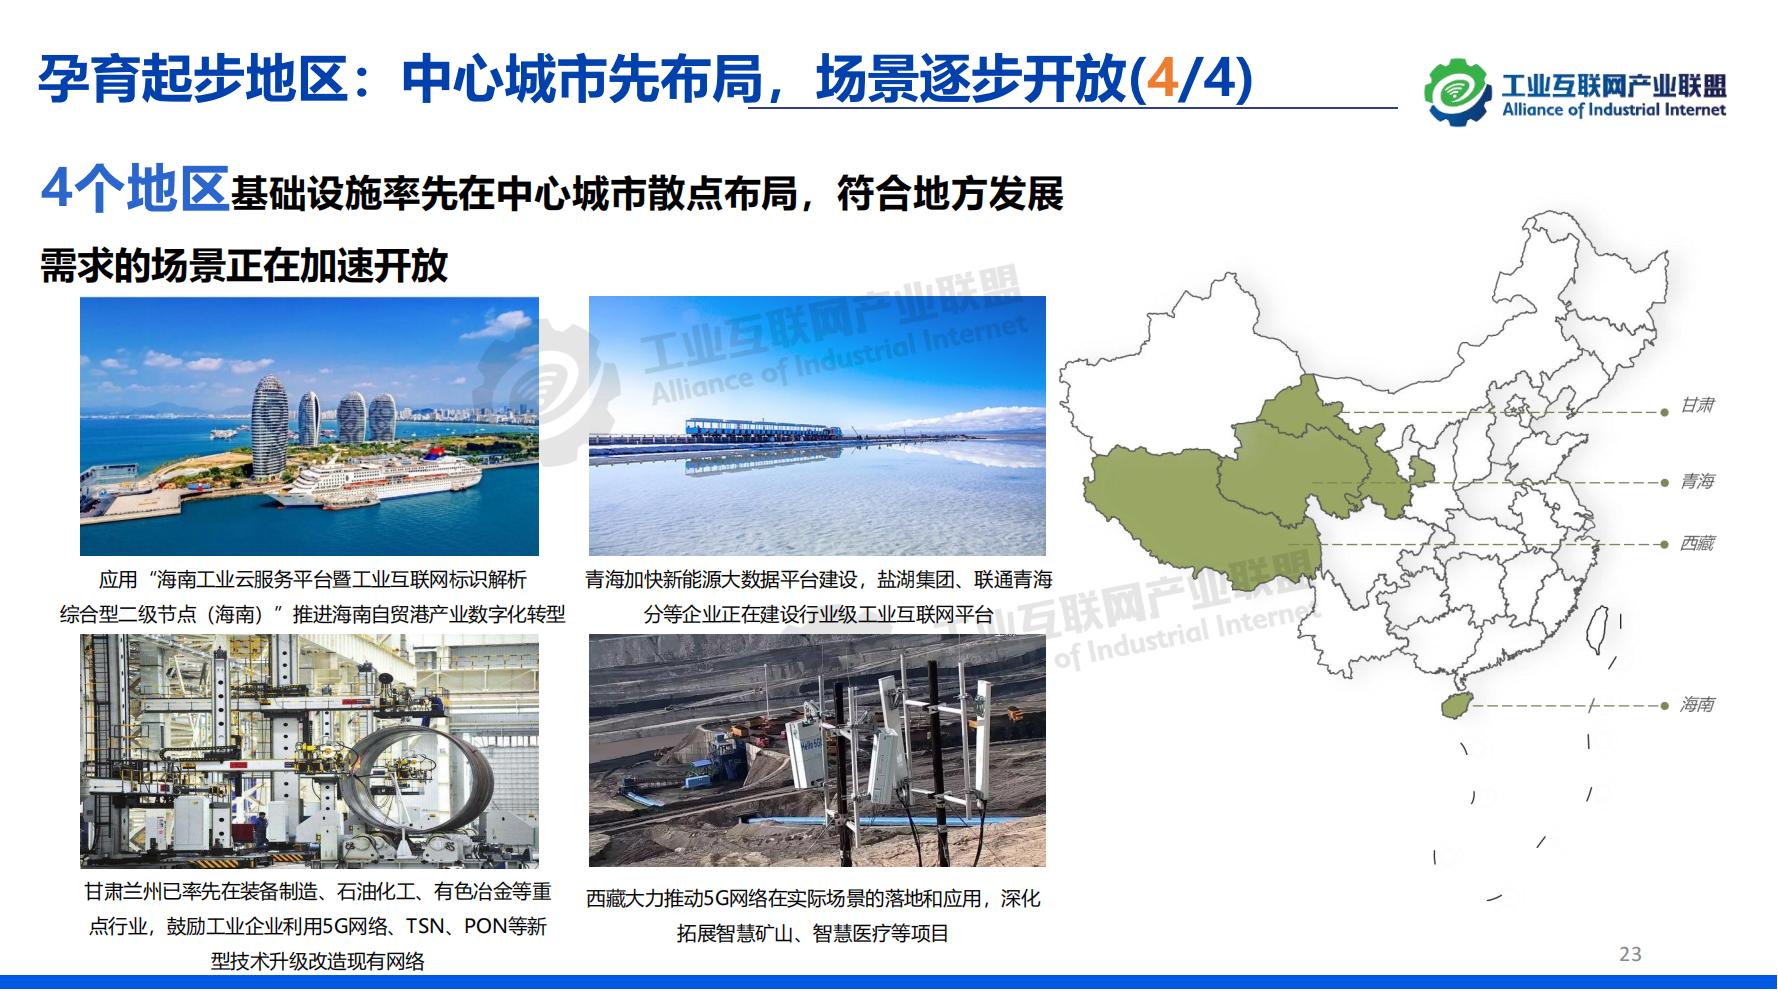 1-中国工业互联网发展成效评估报告-水印_22.jpg